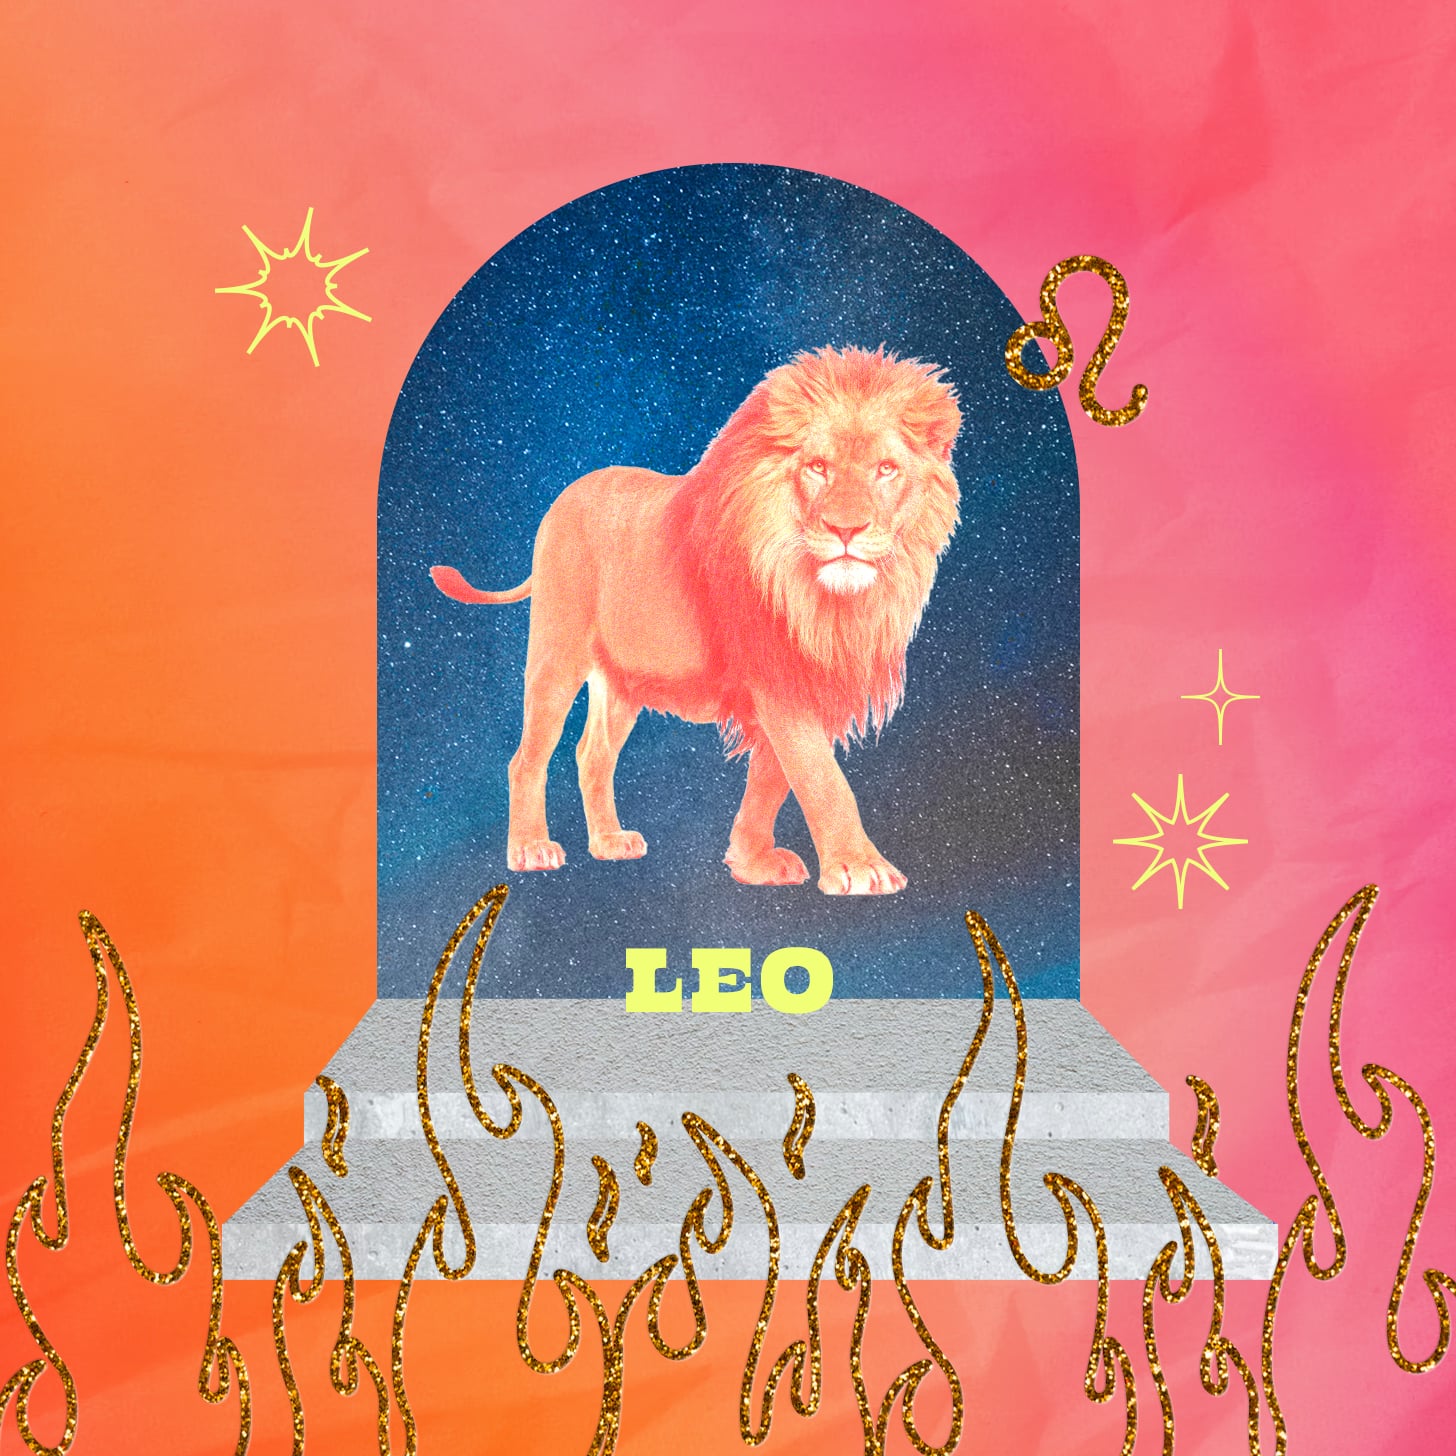 Leo weekly horoscope for September 18, 2022